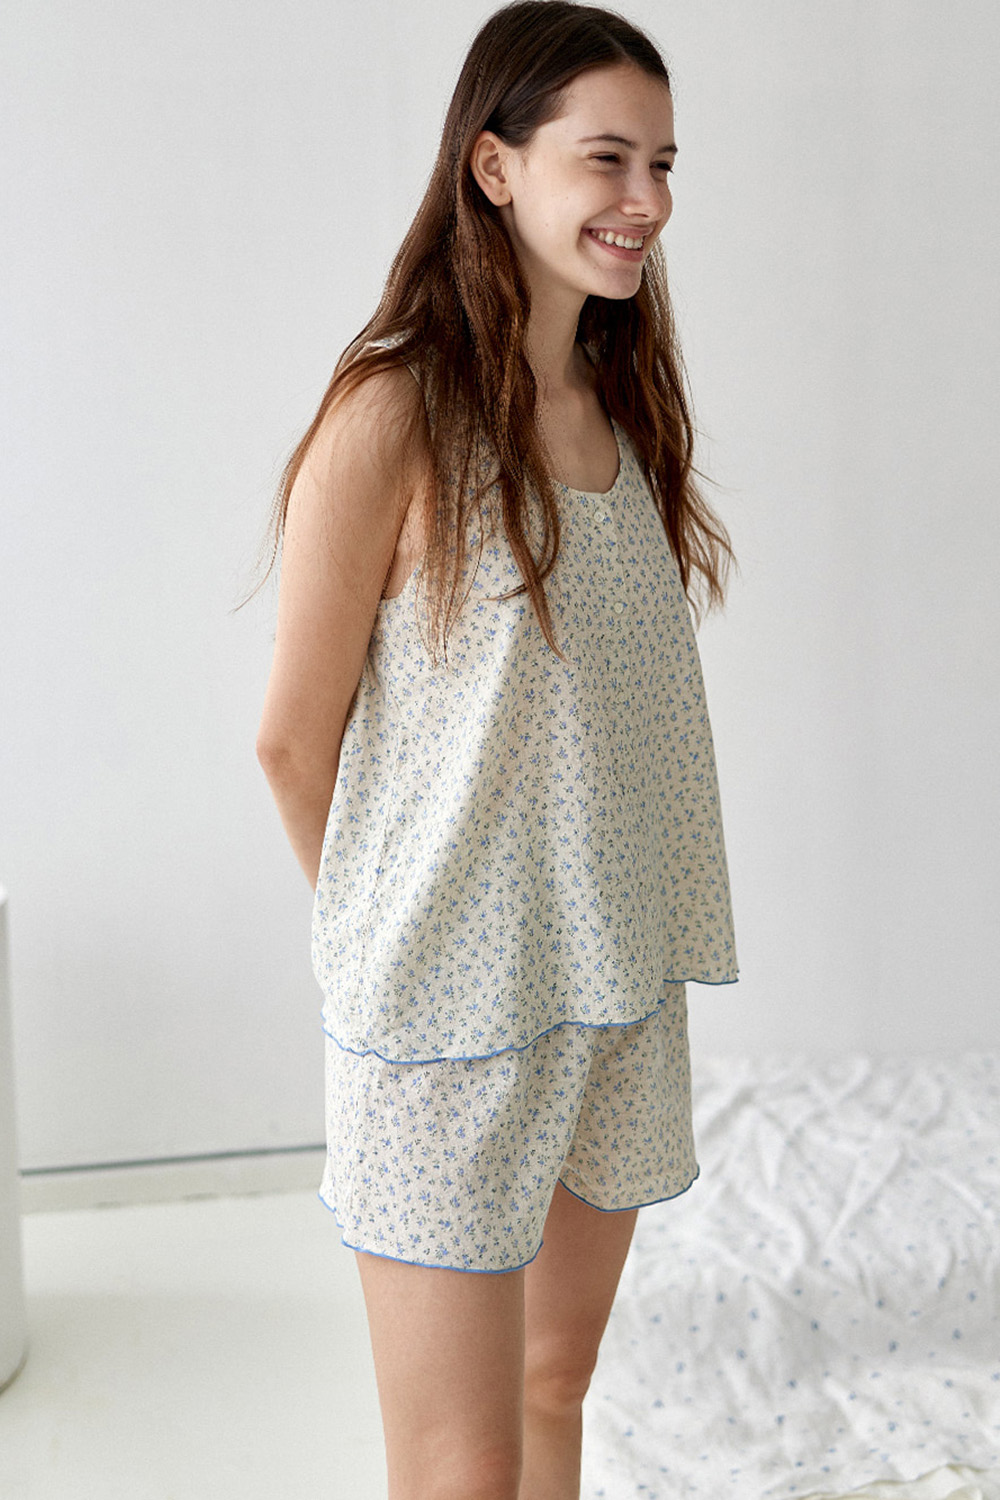 코즈넉 KOZNOK - 내추럴 플라워 민소매 여자 여름 홈웨어세트 잠옷세트 파자마세트 2컬러